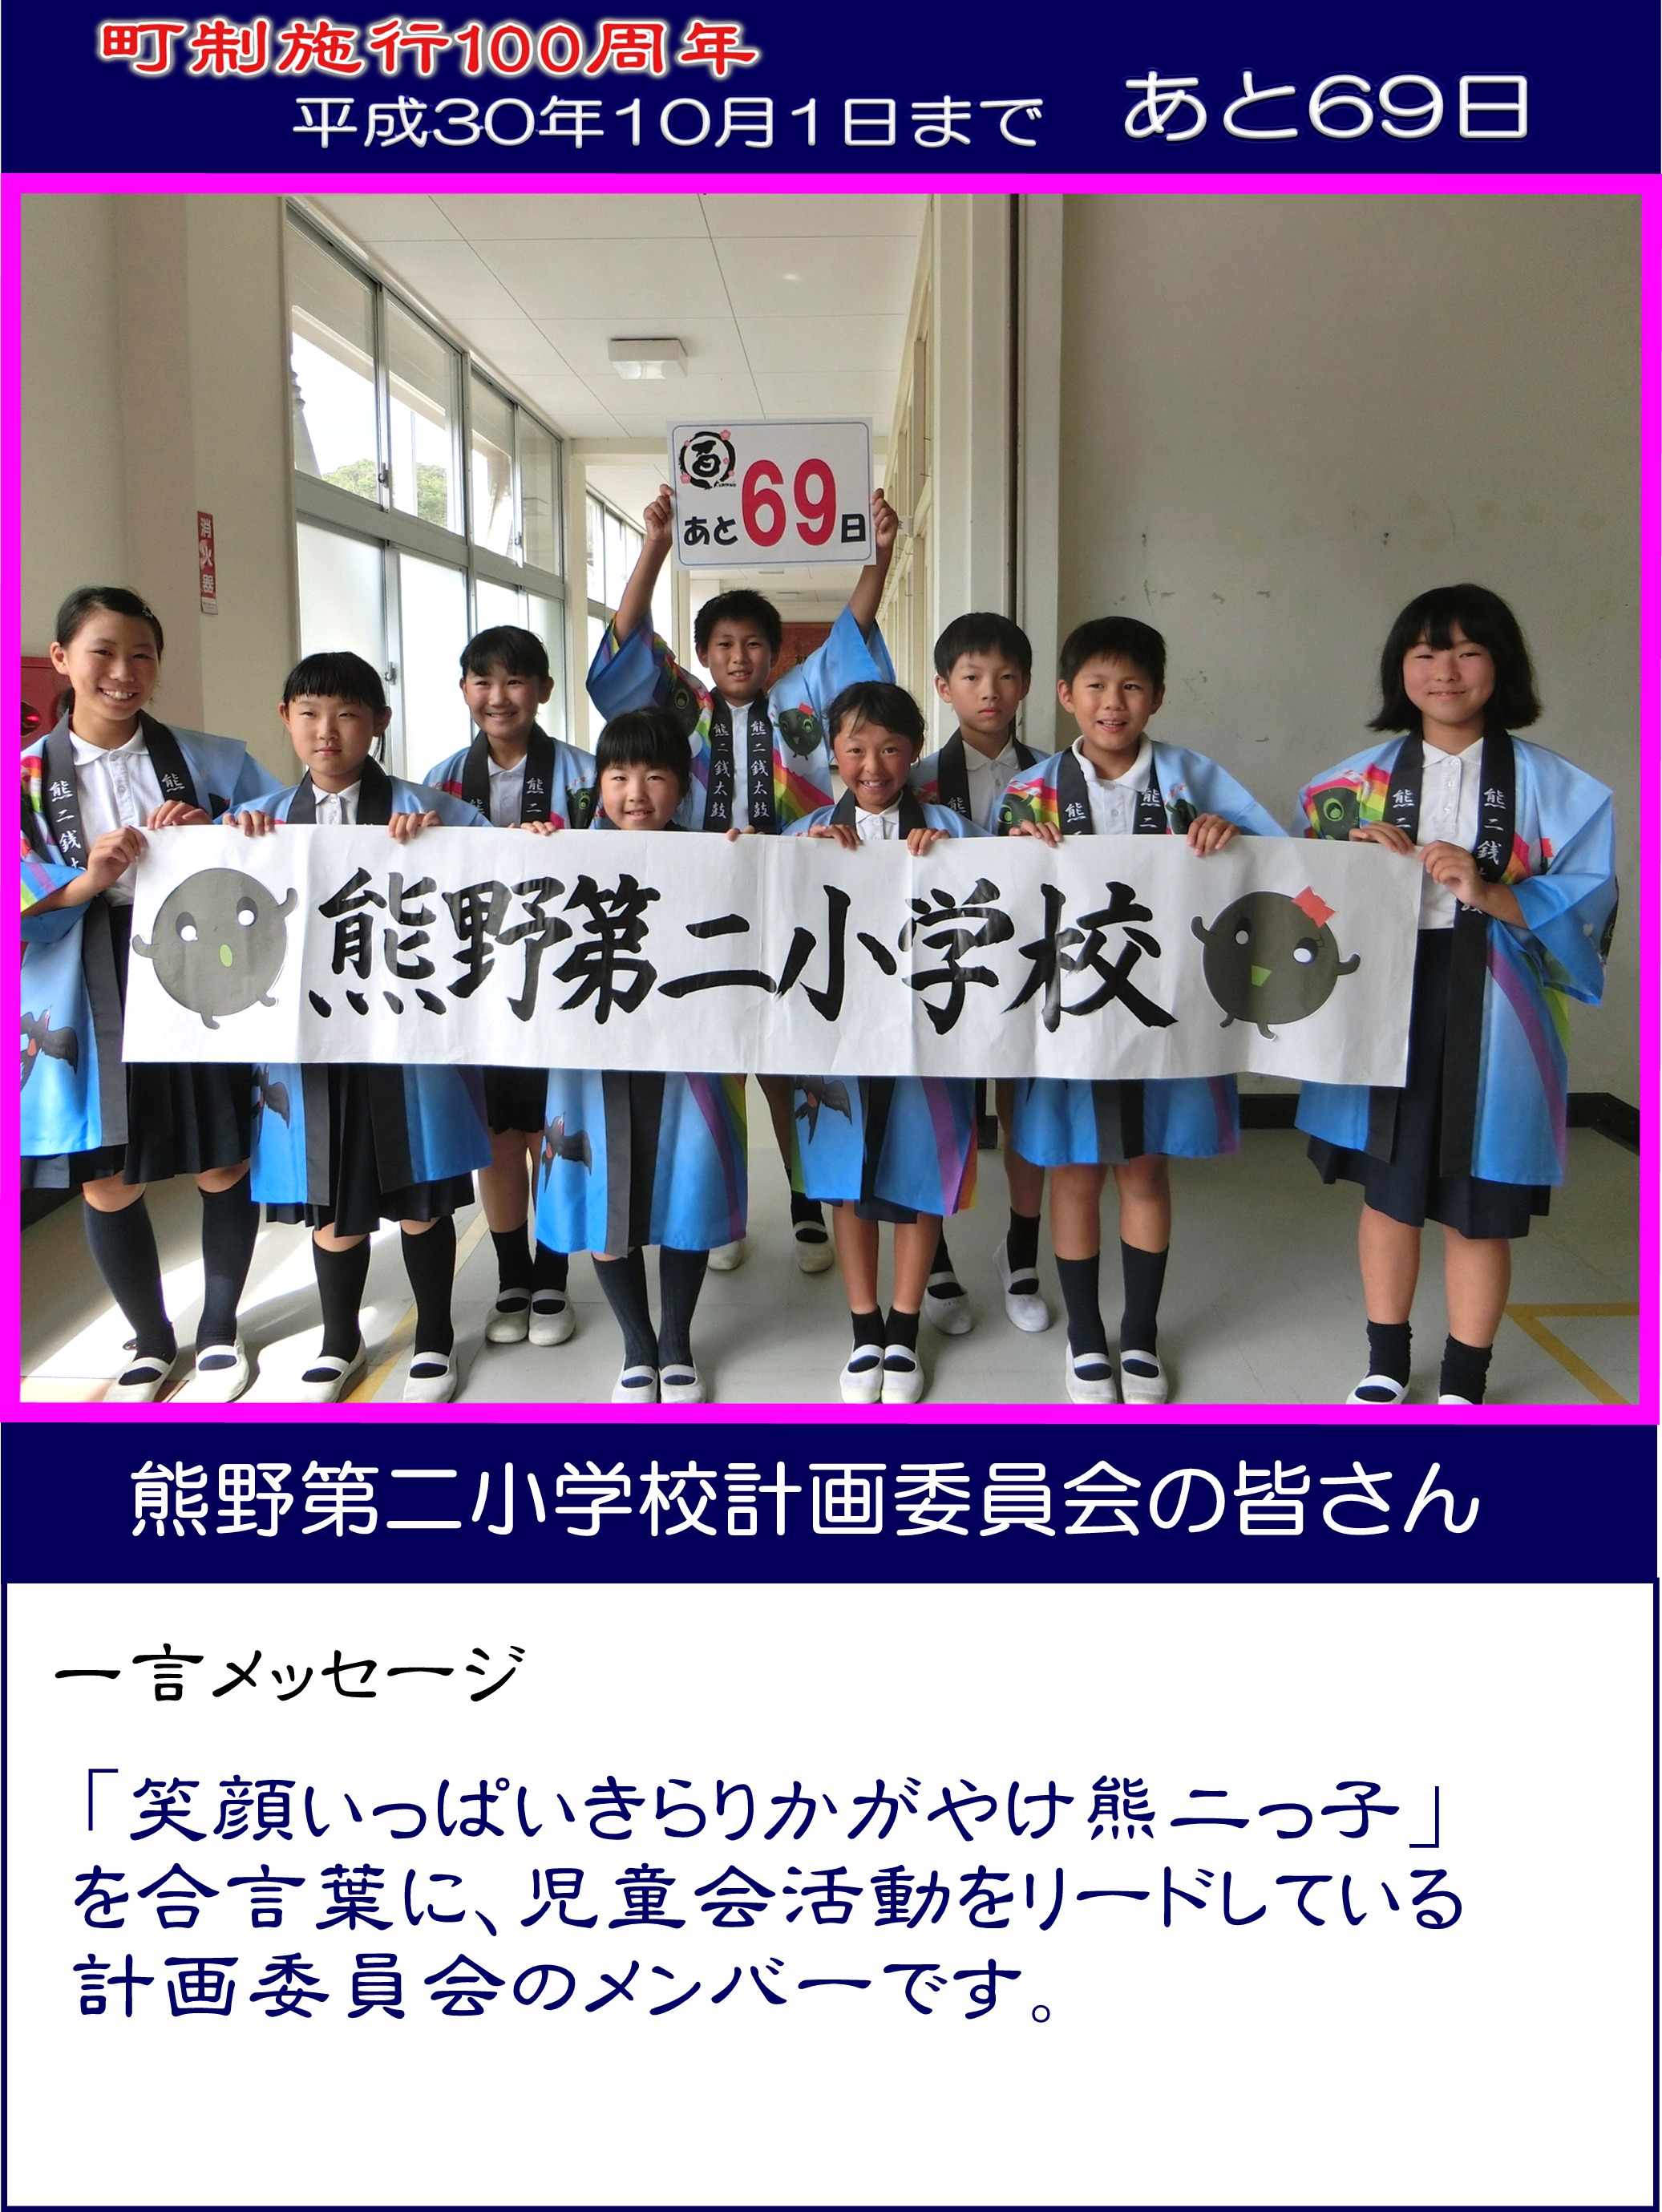 カウントダウン写真熊野第二小学校計画委員会の皆さん69